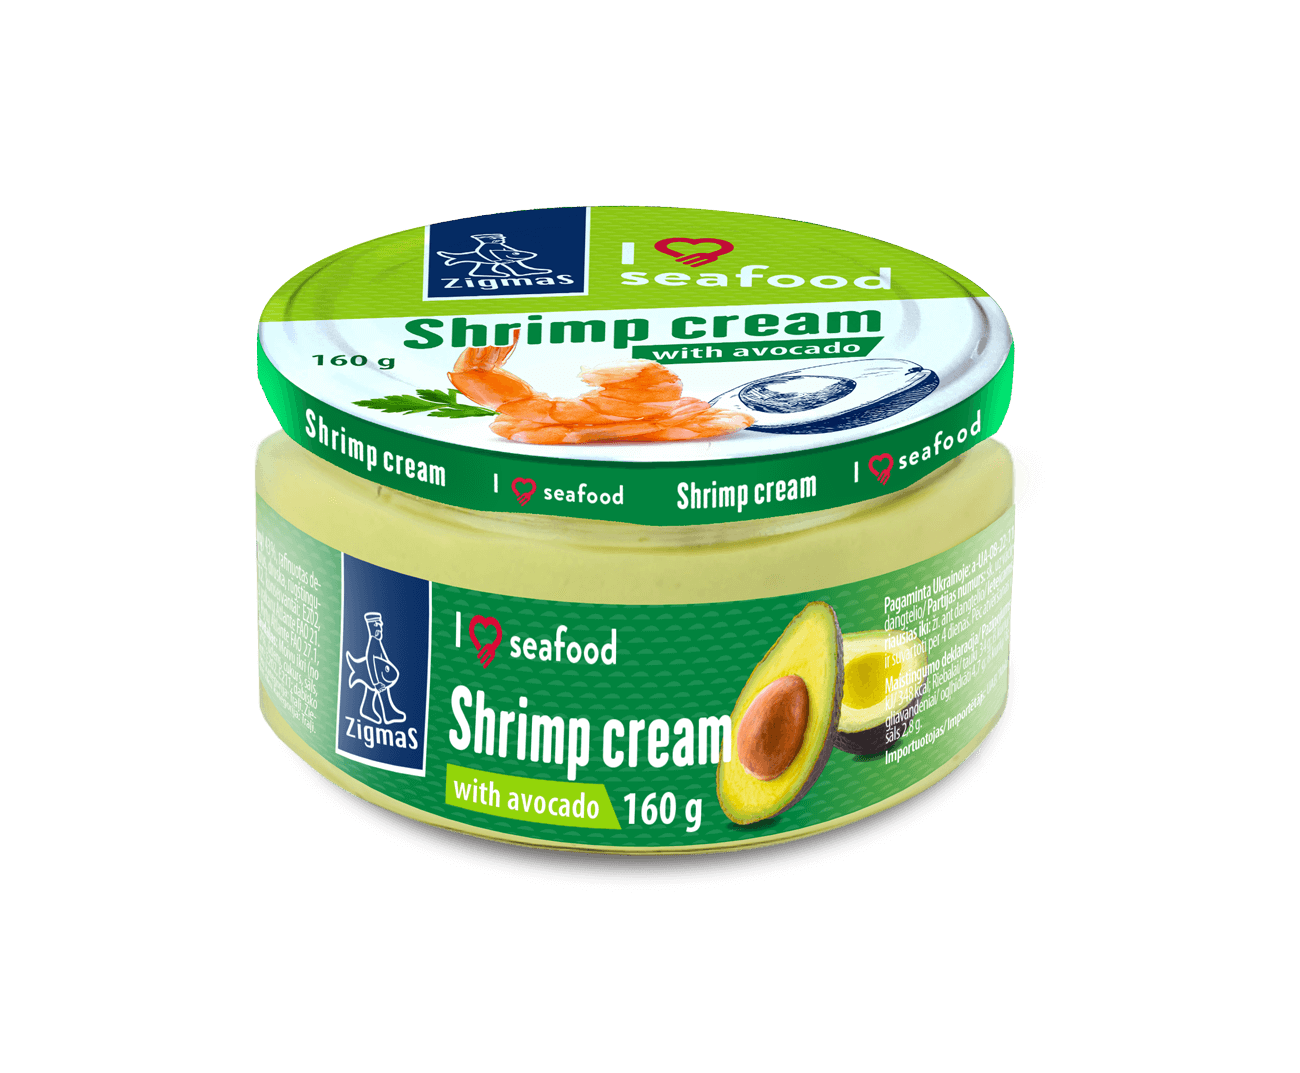 Shrimp cream with avocado